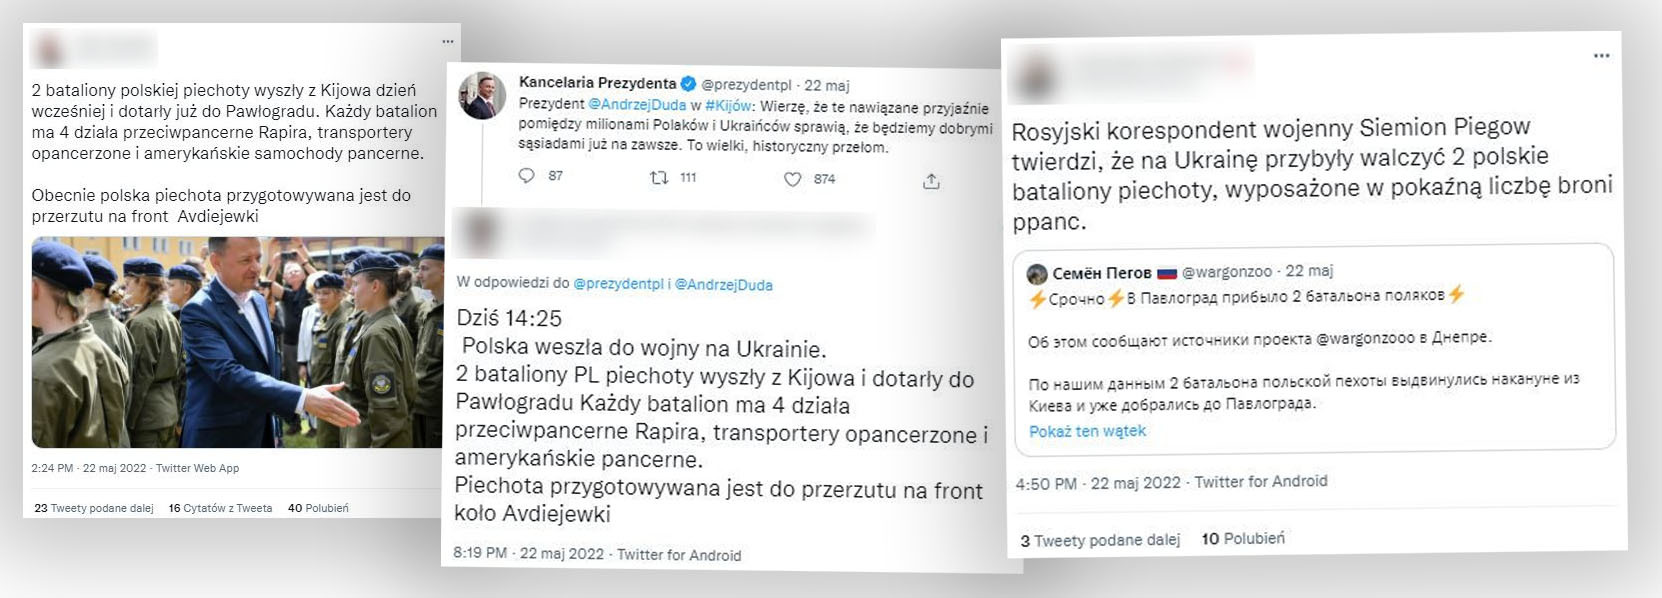 Informacja o polskich siłach zbrojnych działających w Ukrainie rozpowszechniana na Twitterze